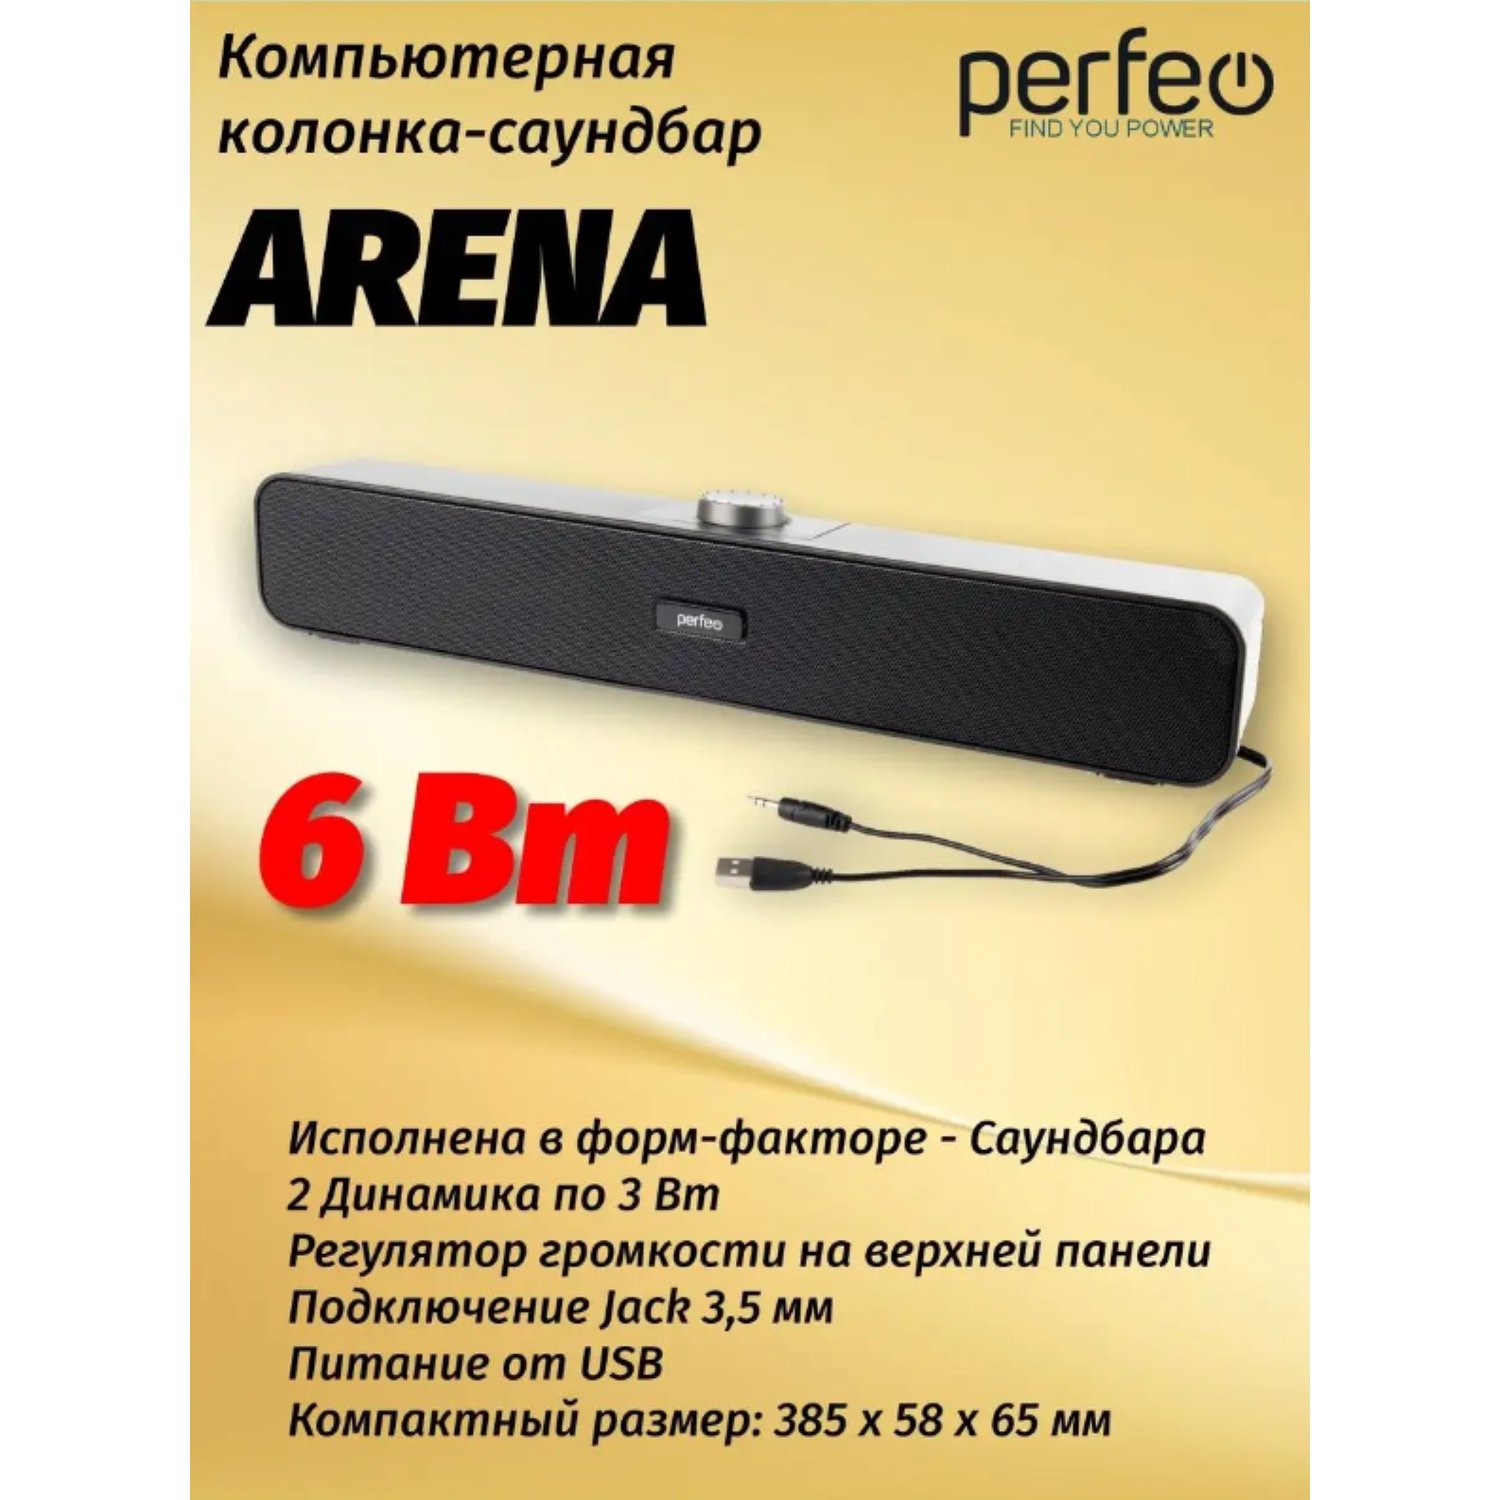 Колонка-саундбар Perfeo компьютерная ARENA мощность 6 Вт USB графит - фото 1